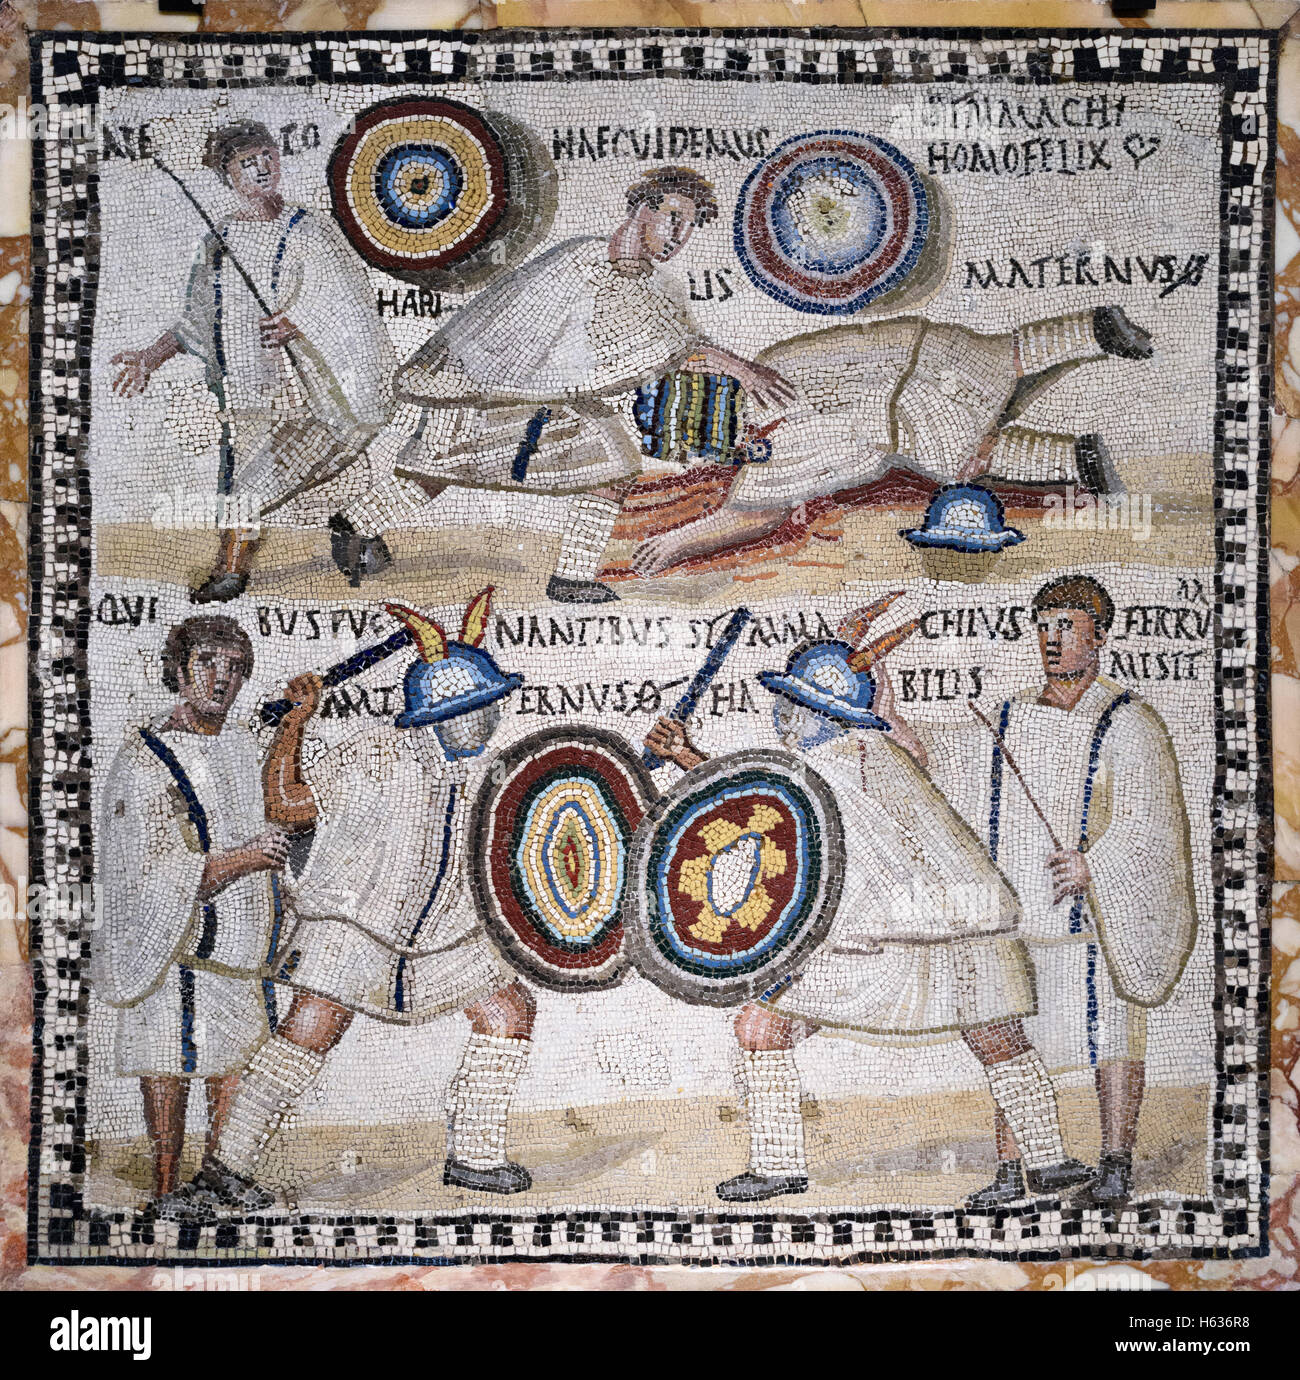 Madrid. L'Espagne. Combat de gladiateurs, mosaïque romaine, 3e siècle, à partir de Rome, Musée Archéologique National d'Espagne. Banque D'Images